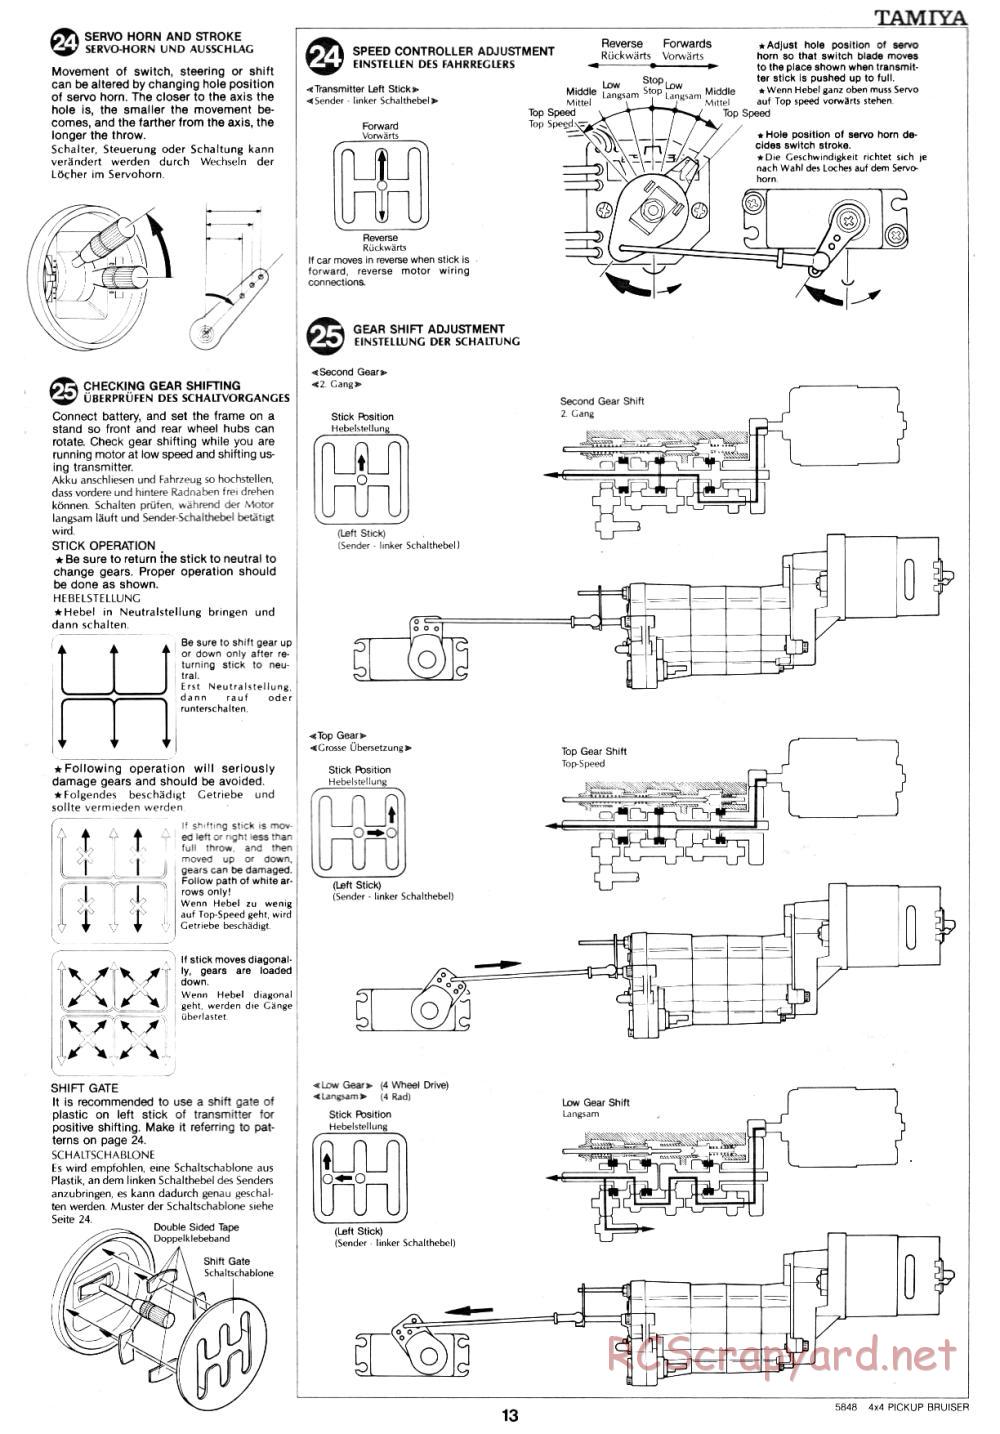 Tamiya - Toyota 4x4 Pick-Up Bruiser - 58048 - Manual - Page 13